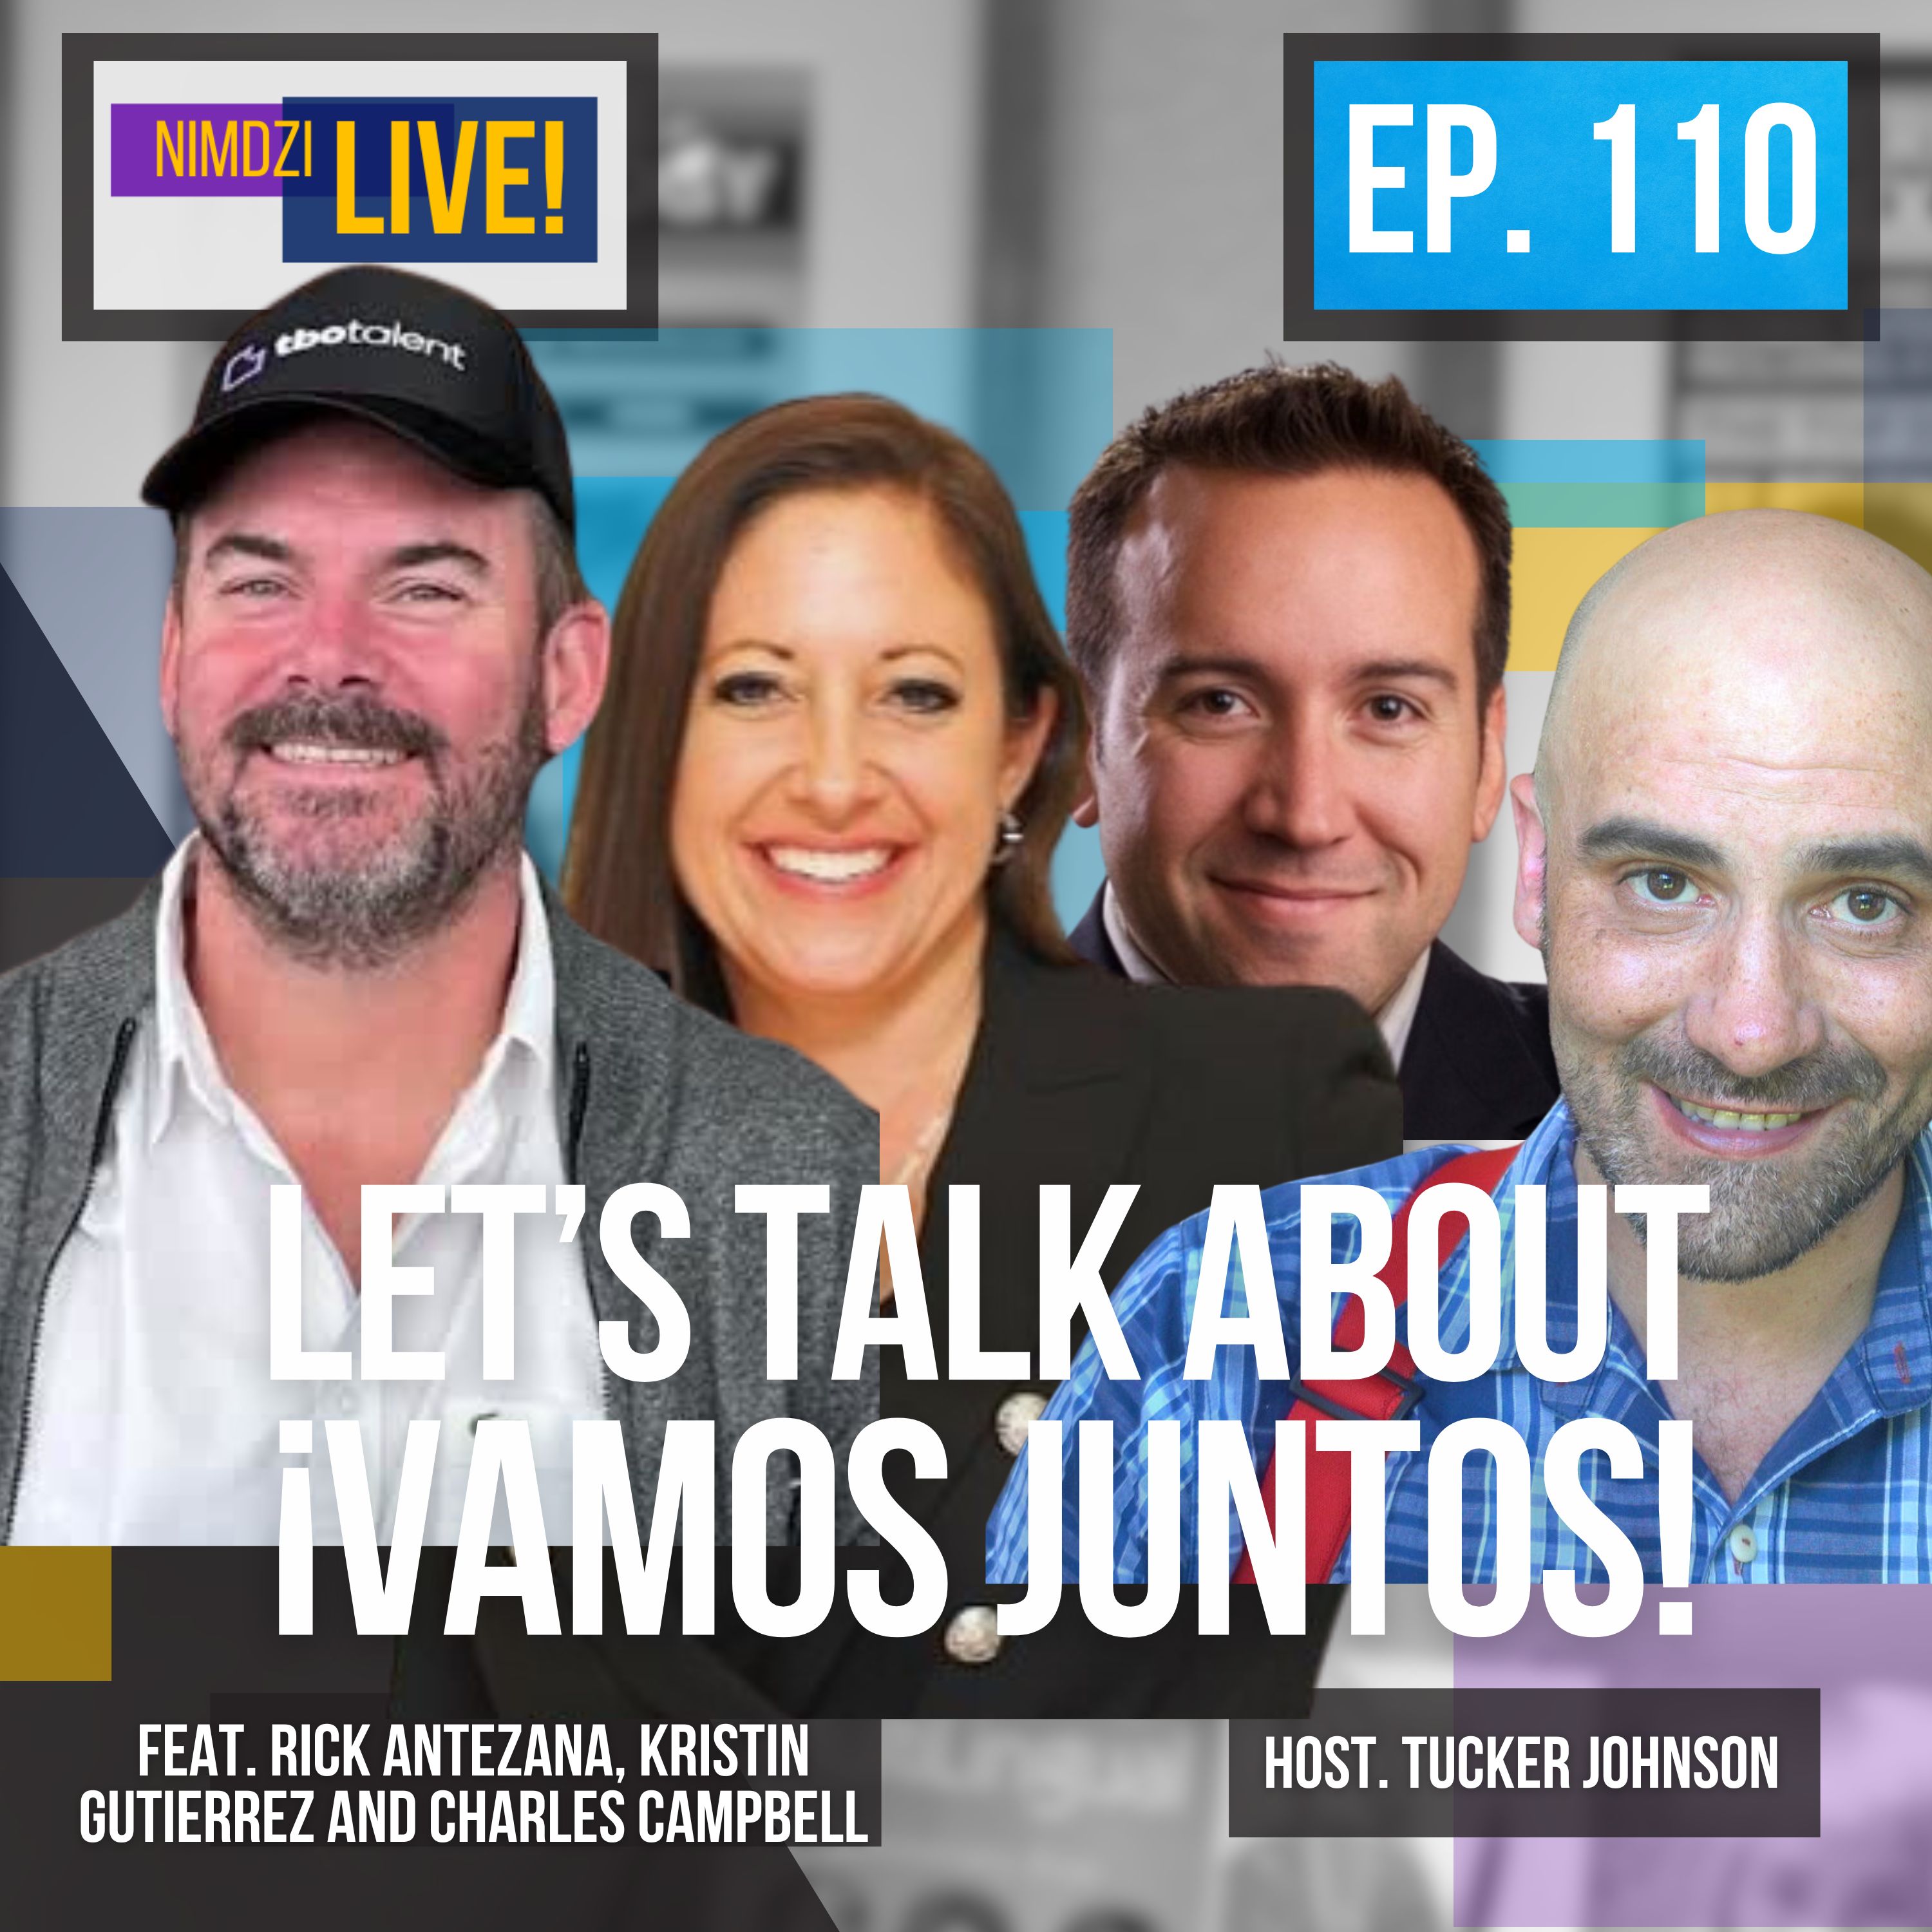 Let's talk about VAMOS JUNTOS!